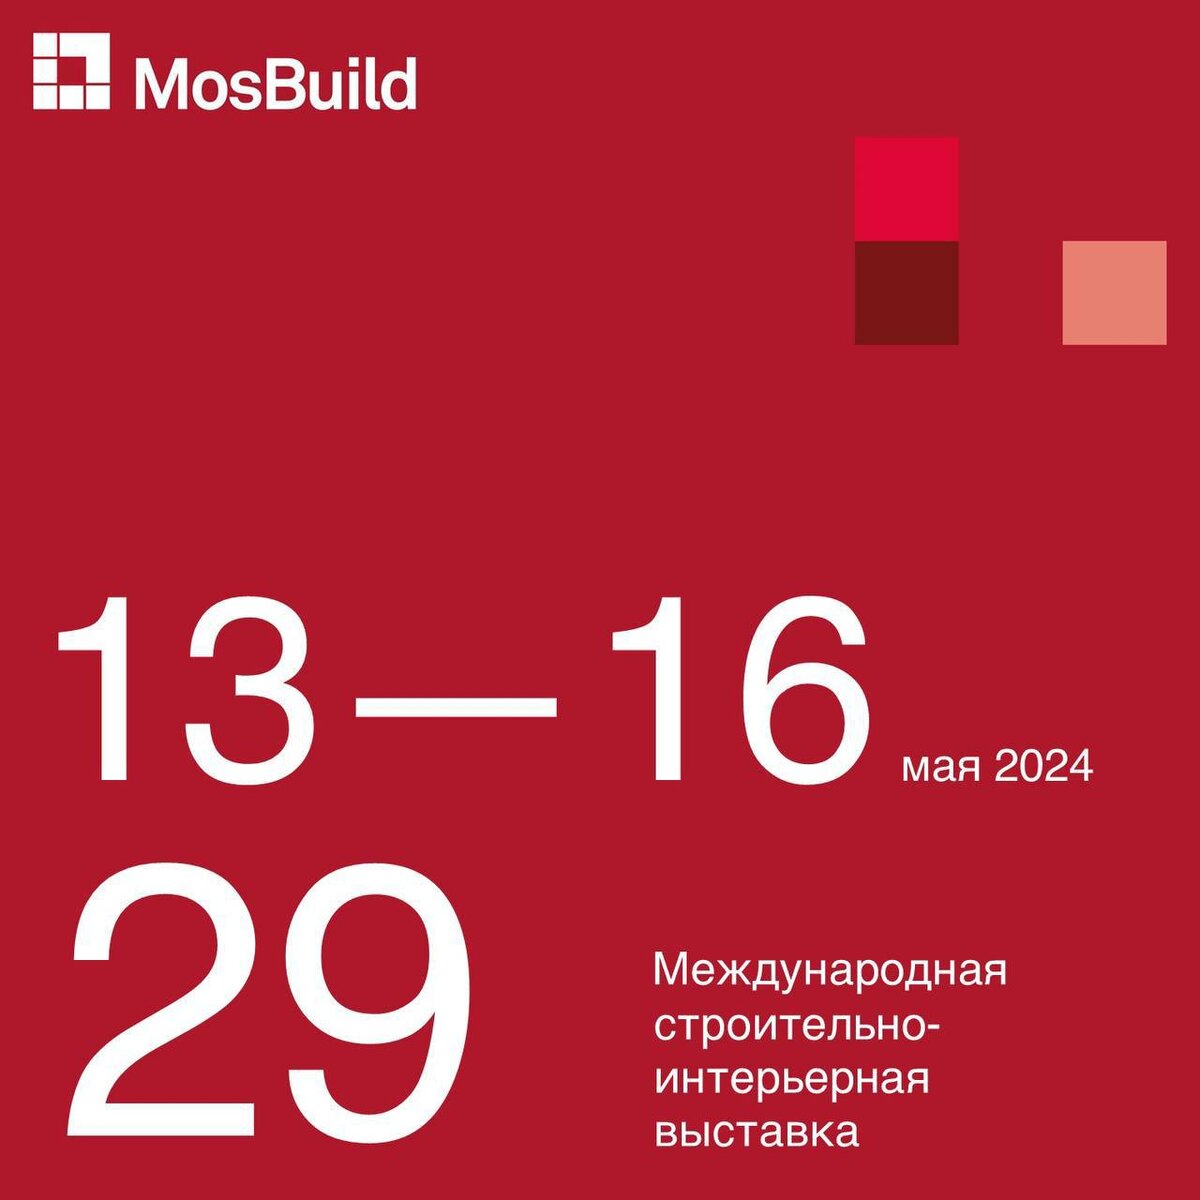 13 мая начнет работу MosBuild 2024 – крупнейшая в России и СНГ выставка товаров для строительства, ремонта и интерьера.